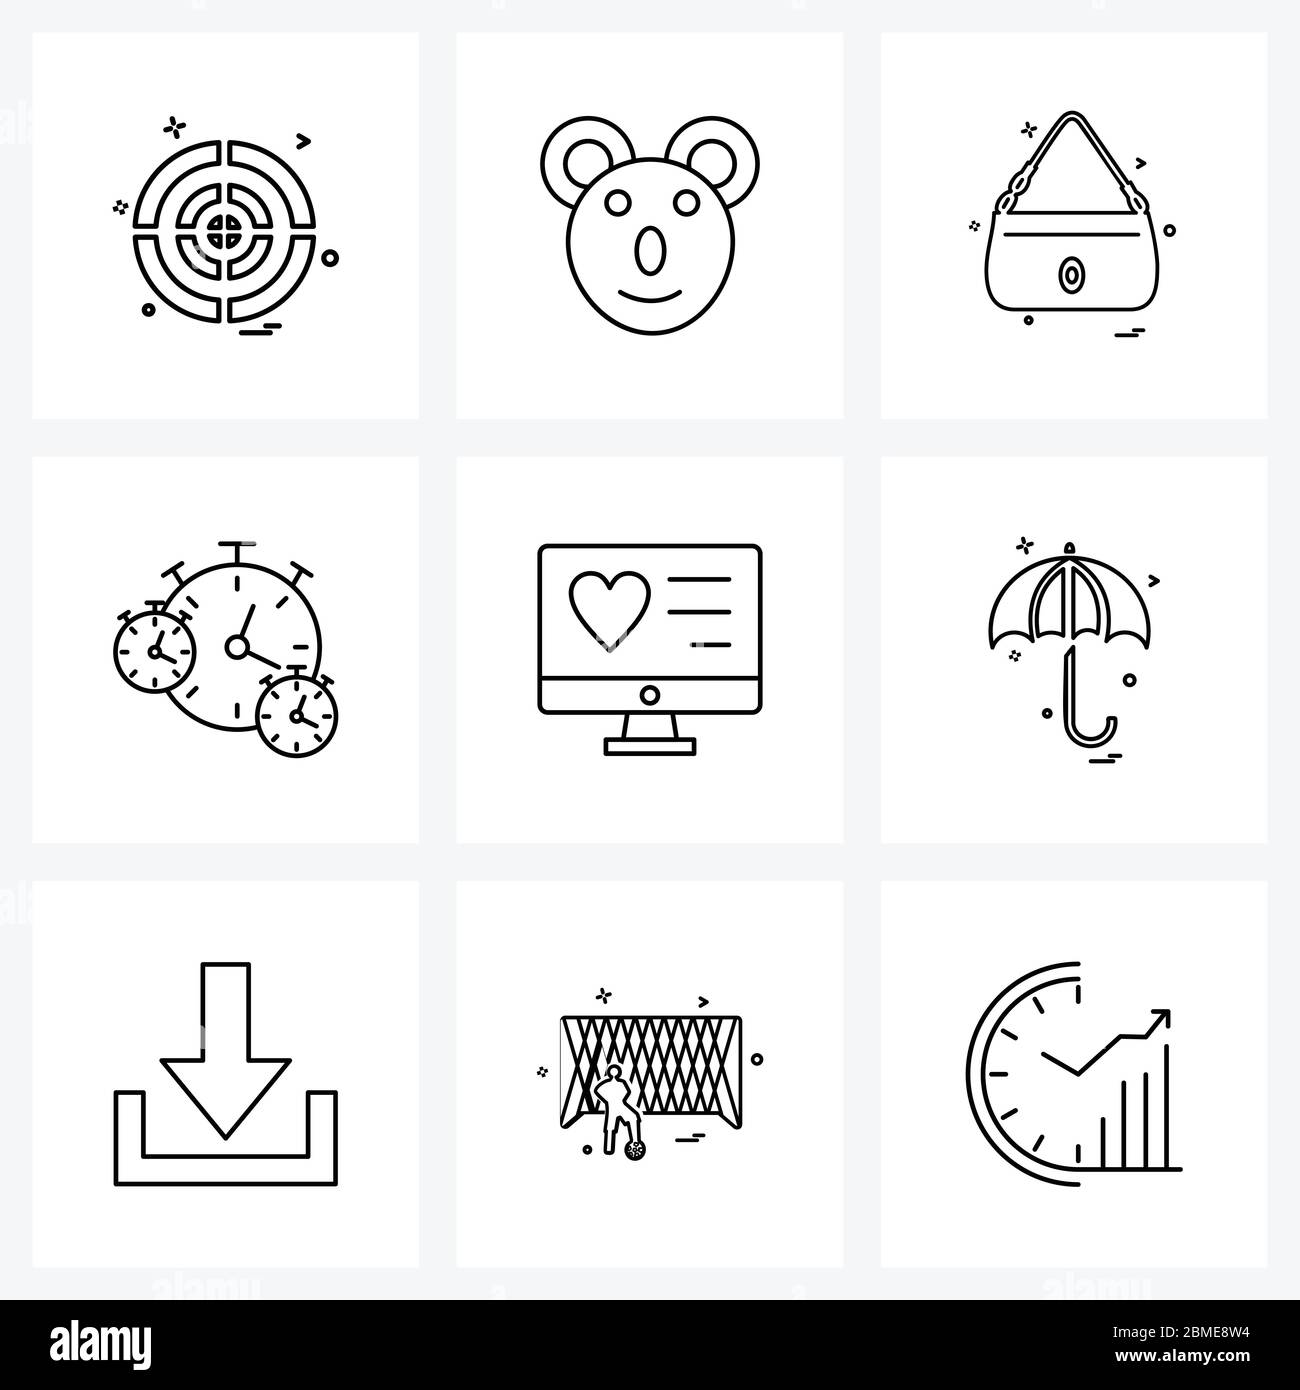 Jeu de 9 icônes de ligne simple pour le Web et l'impression telles que le coeur, l'heure, le sac à main pour femmes, horloge, chronomètre Illustration vectorielle Illustration de Vecteur